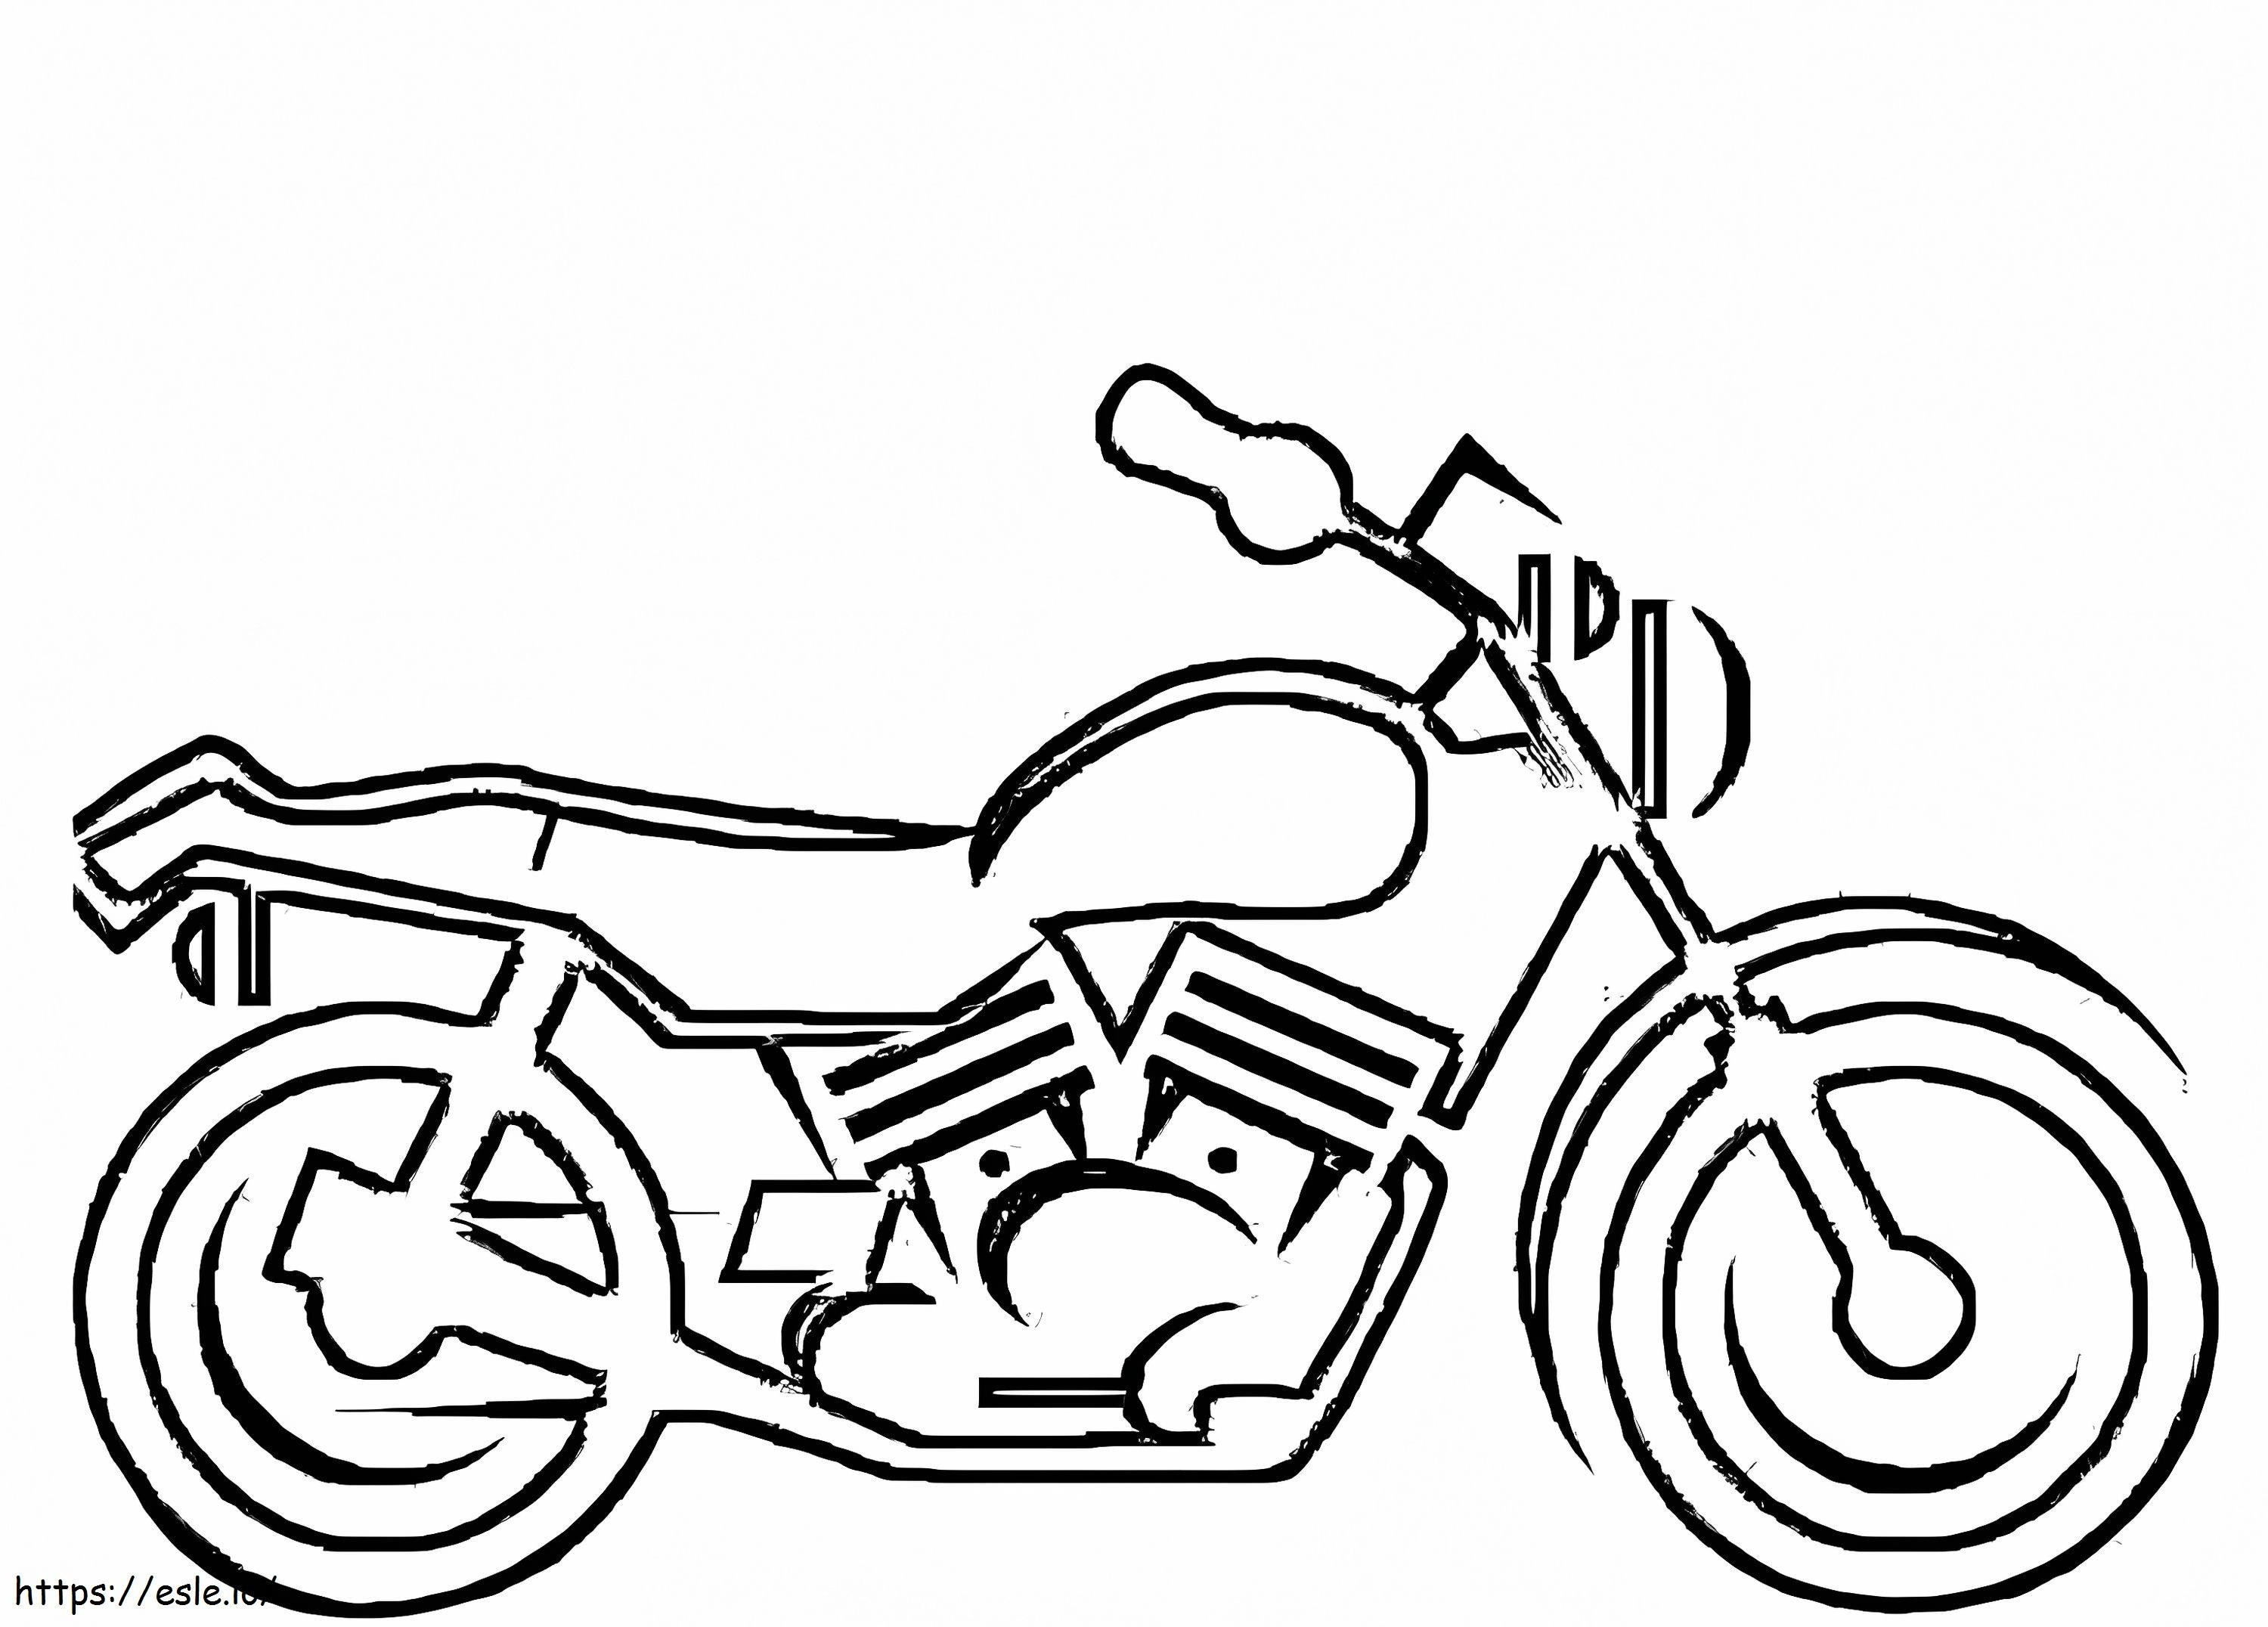 Uma motocicleta para colorir